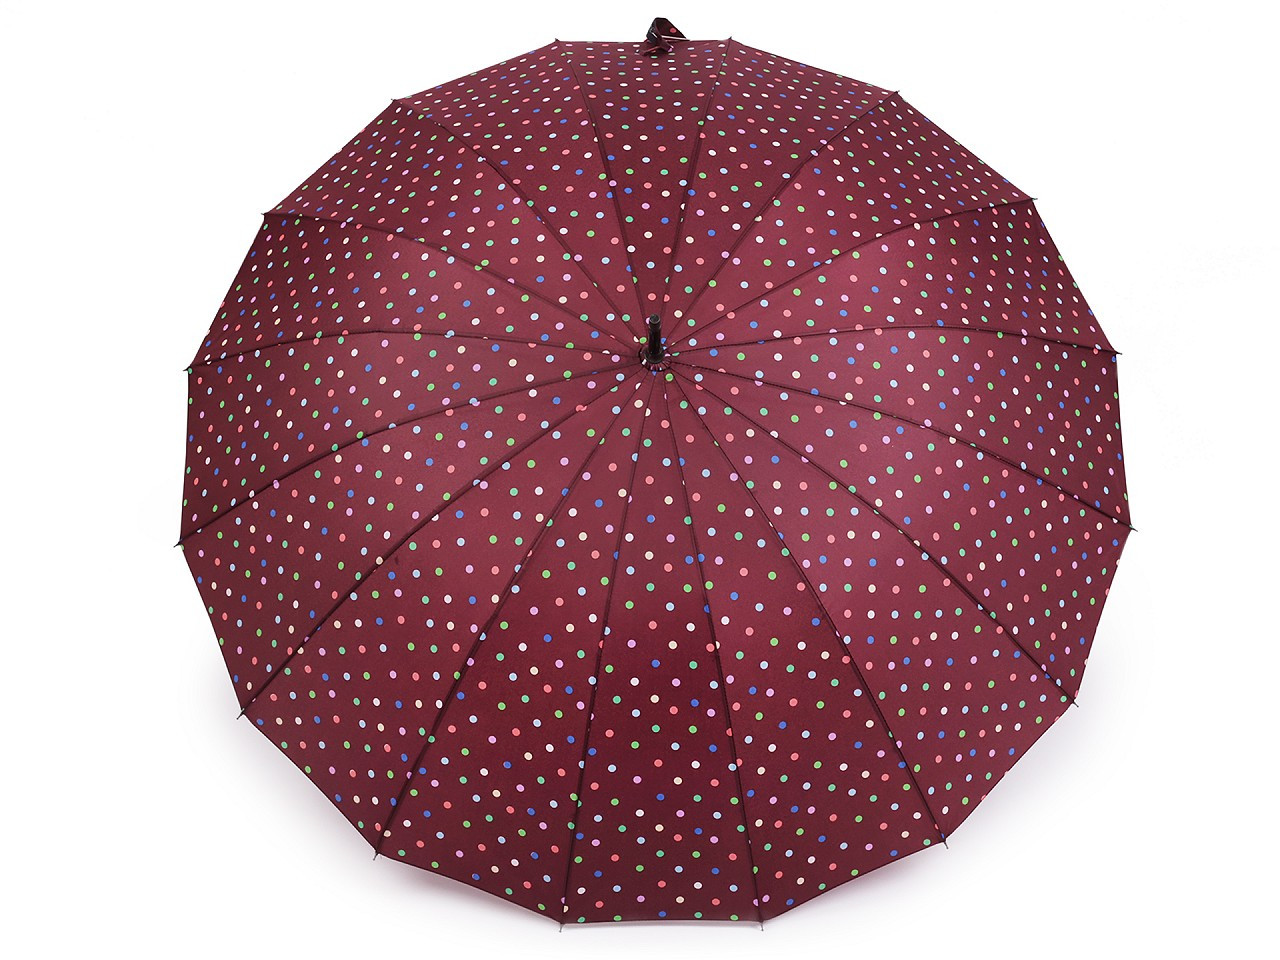 Velký rodinný deštník s puntíky, barva 1 vínová